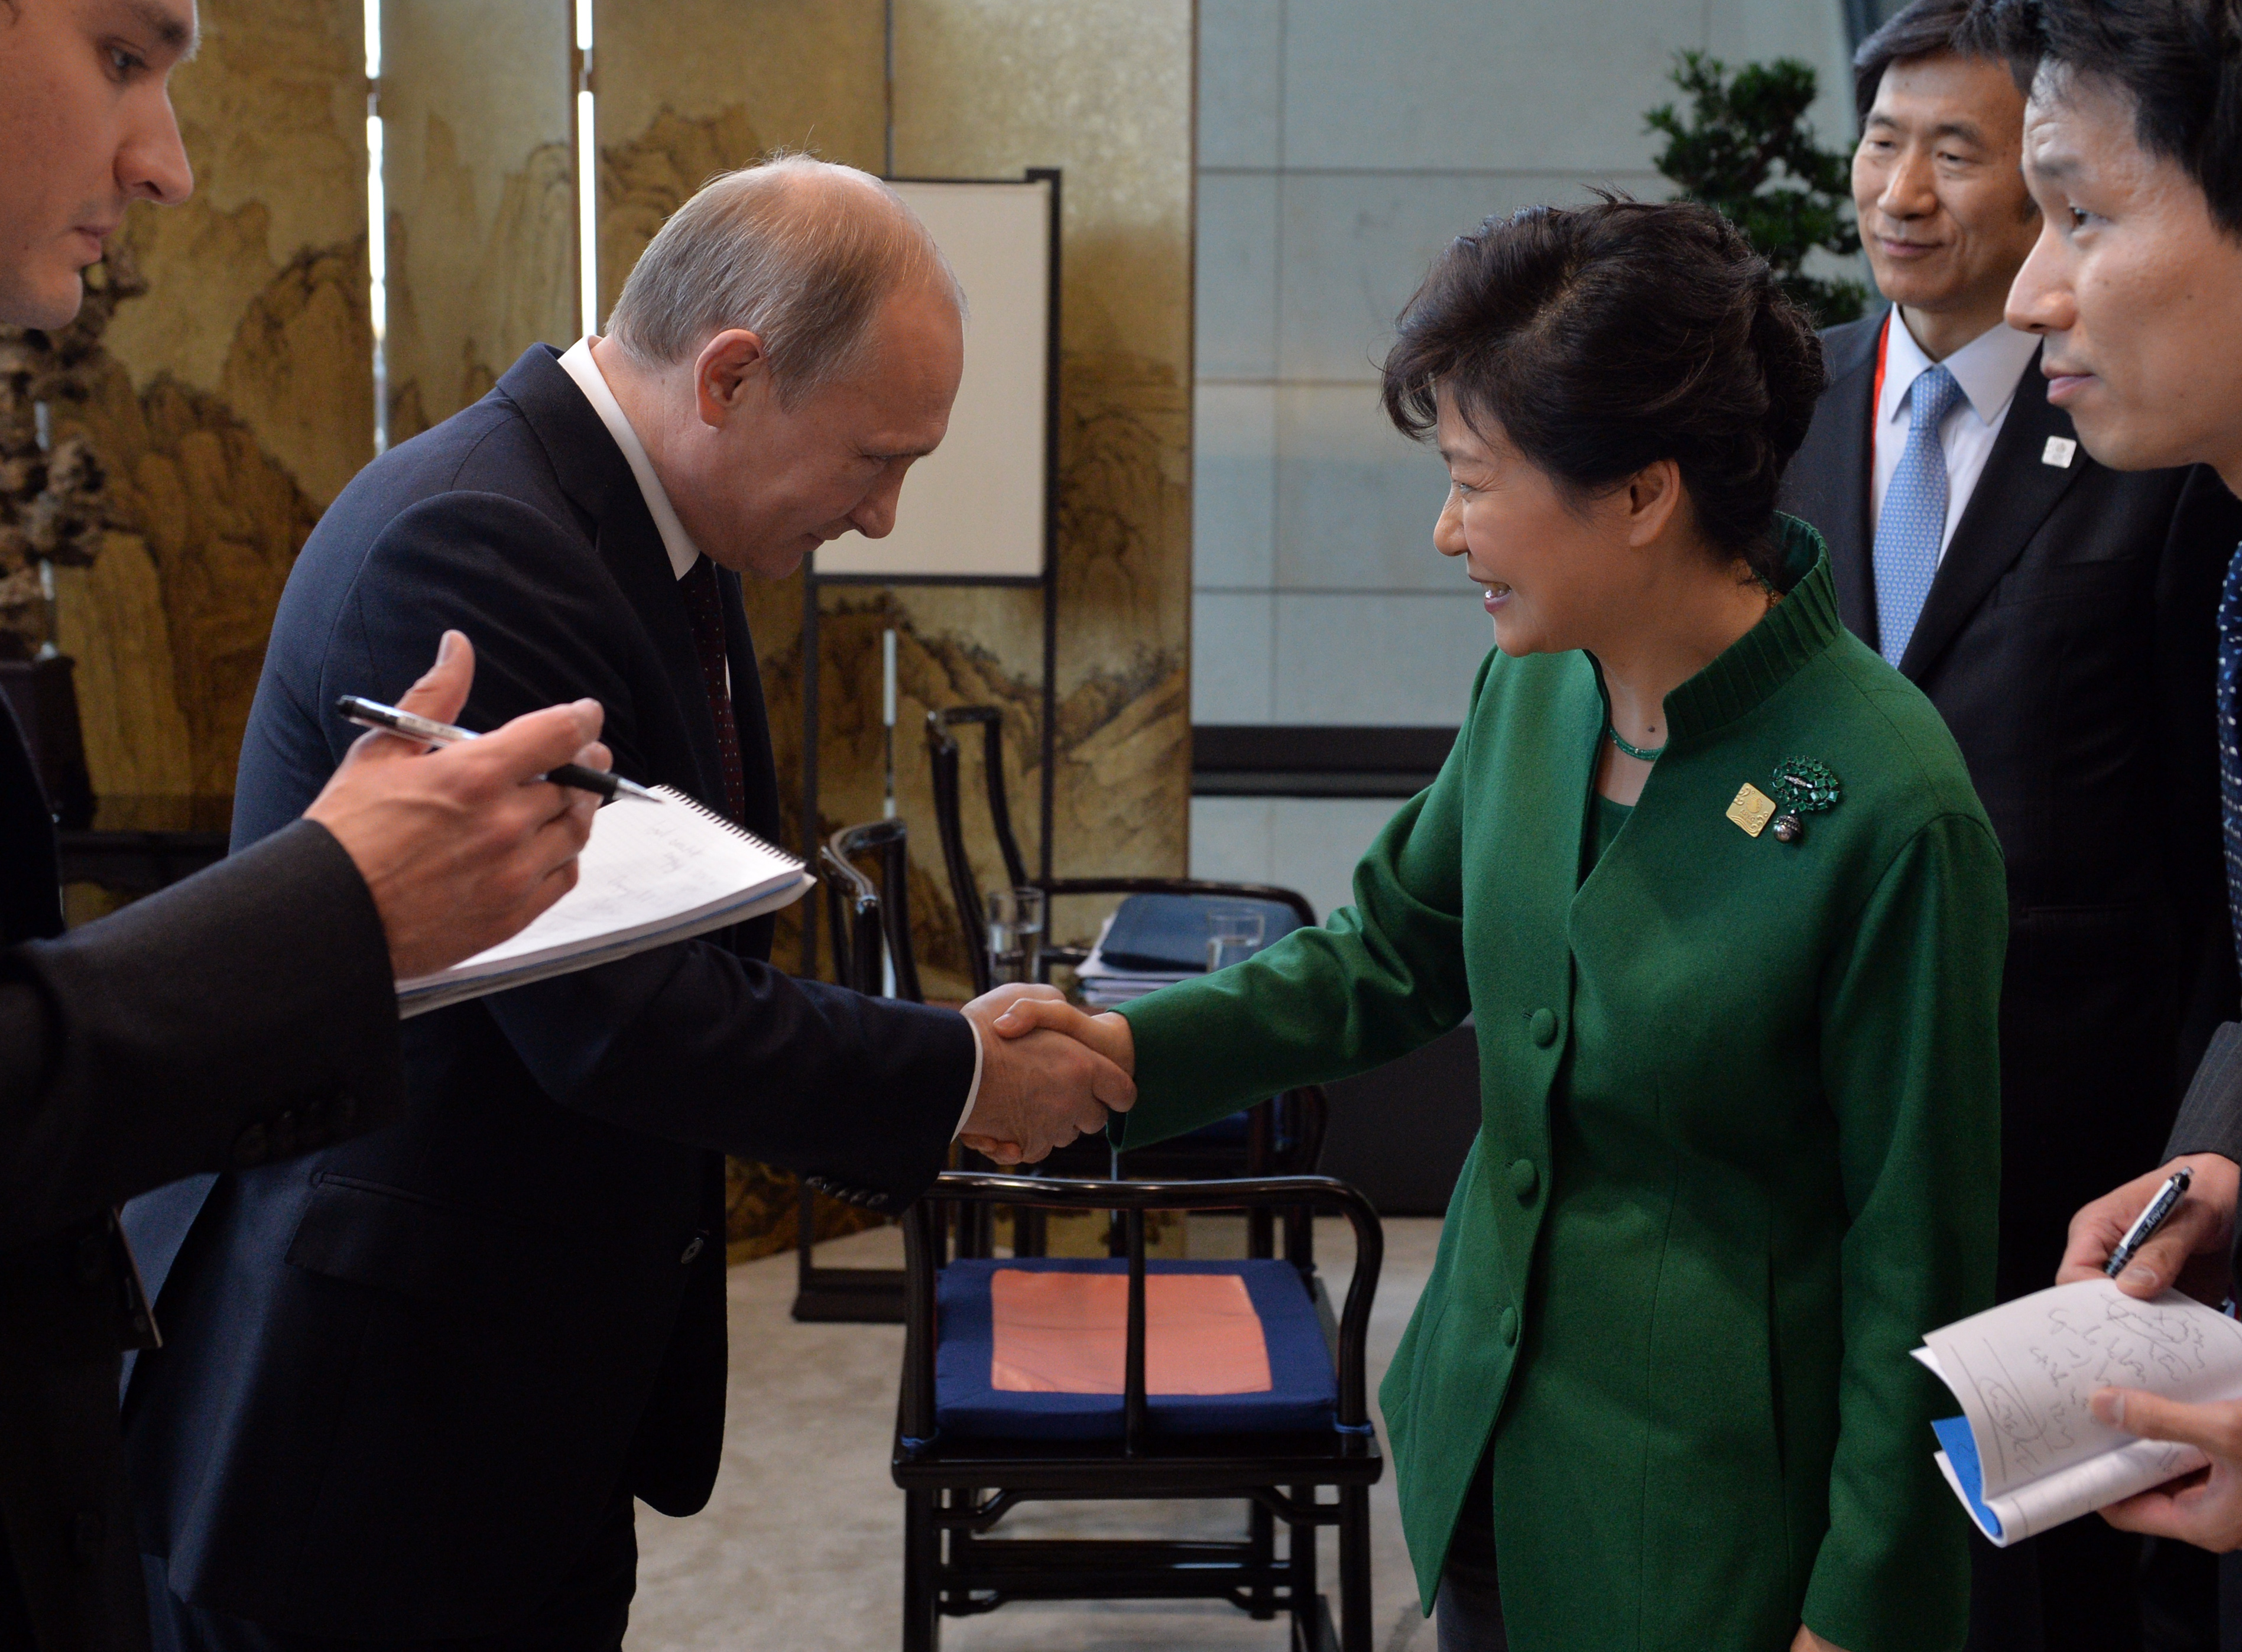 Studeni 2014. Putin se službeno rukuje s južnokorejskom predsjednicom Park Geun-hye na summitu APEC. Nikome nije bilo hladno.